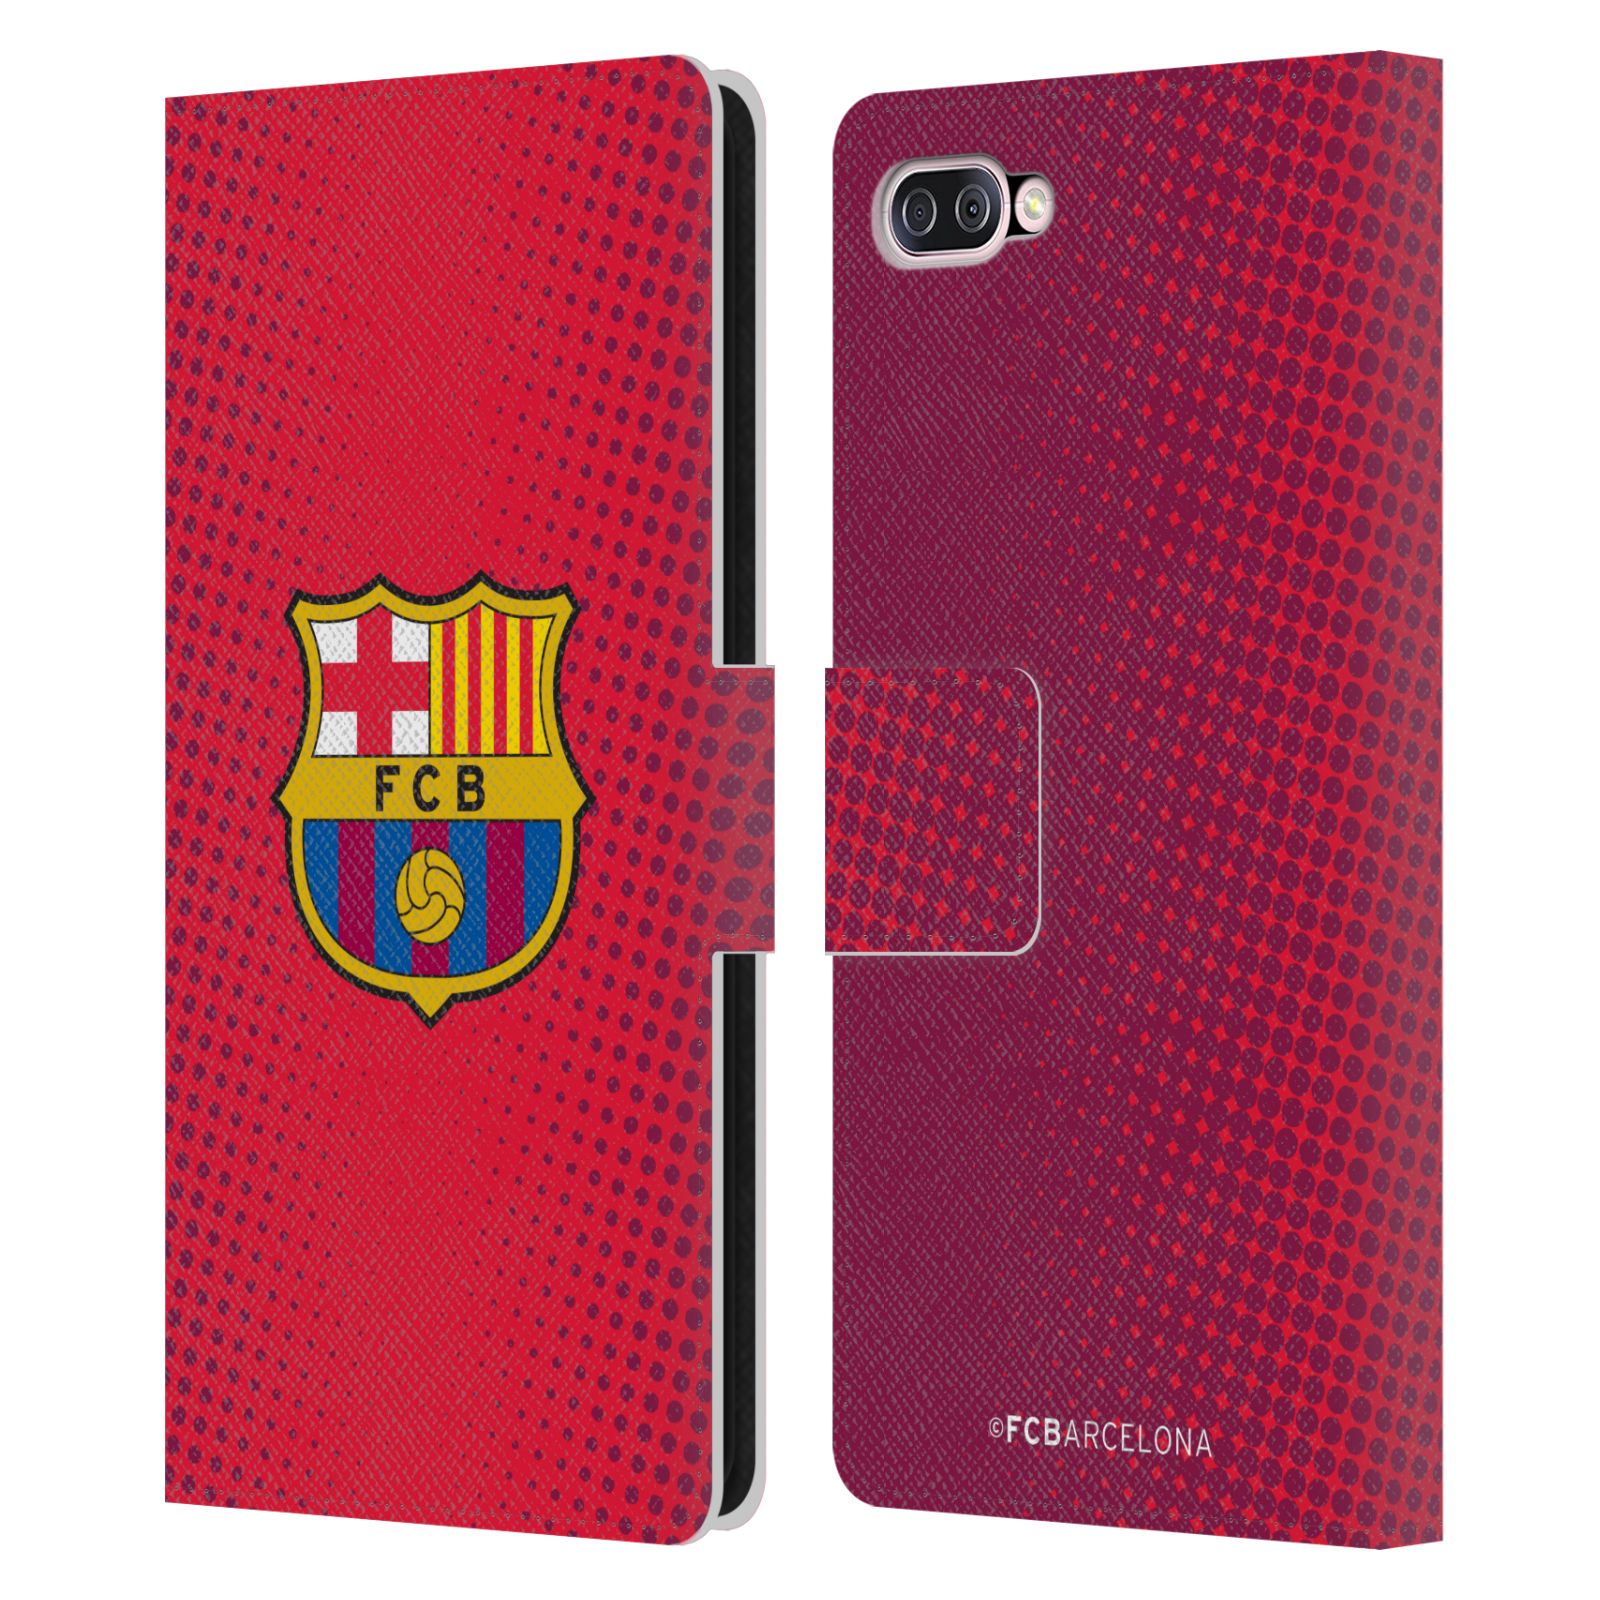 Pouzdro na mobil Asus Zenfone 4 Max (ZC554KL)  - HEAD CASE - FC Barcelona - Tečky červená